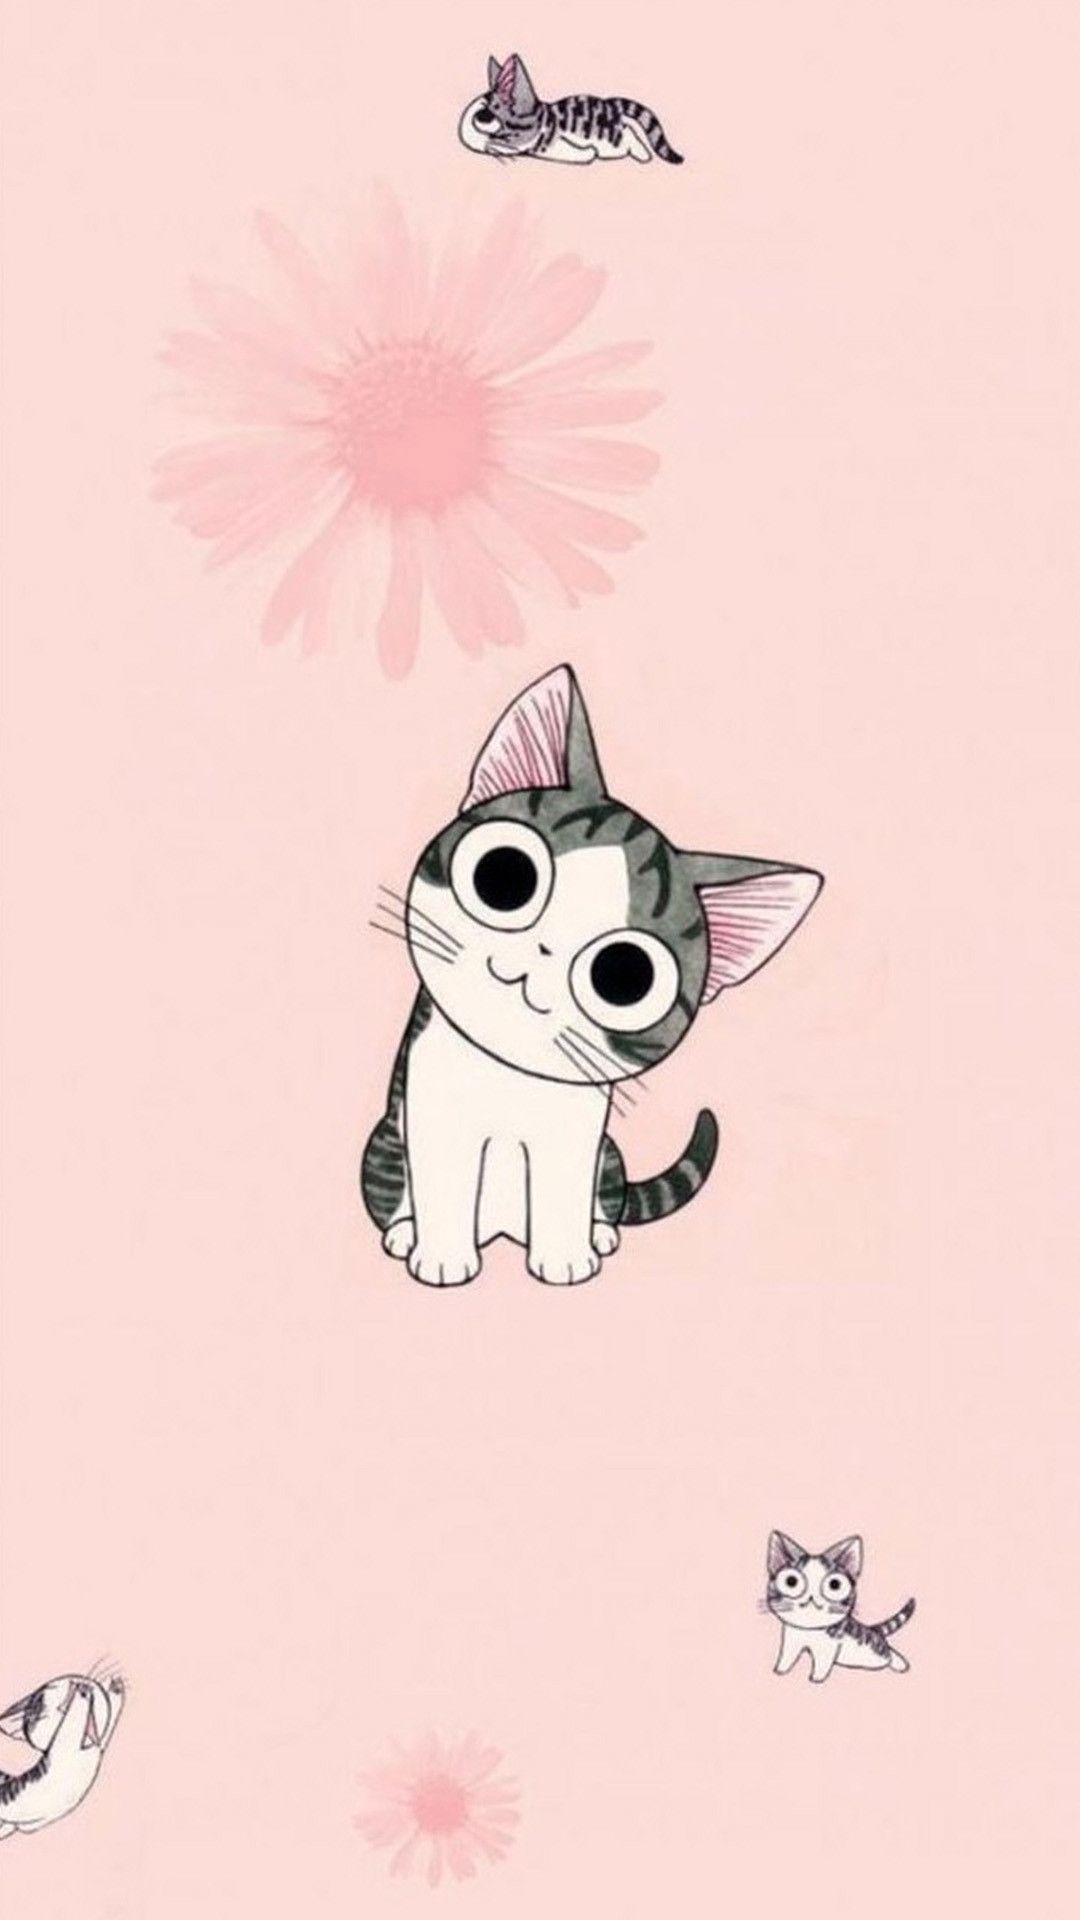 Funny Cartoon Cat iPhone Wallpaper. Cute cat wallpaper, Cat wallpaper, Cute anime cat